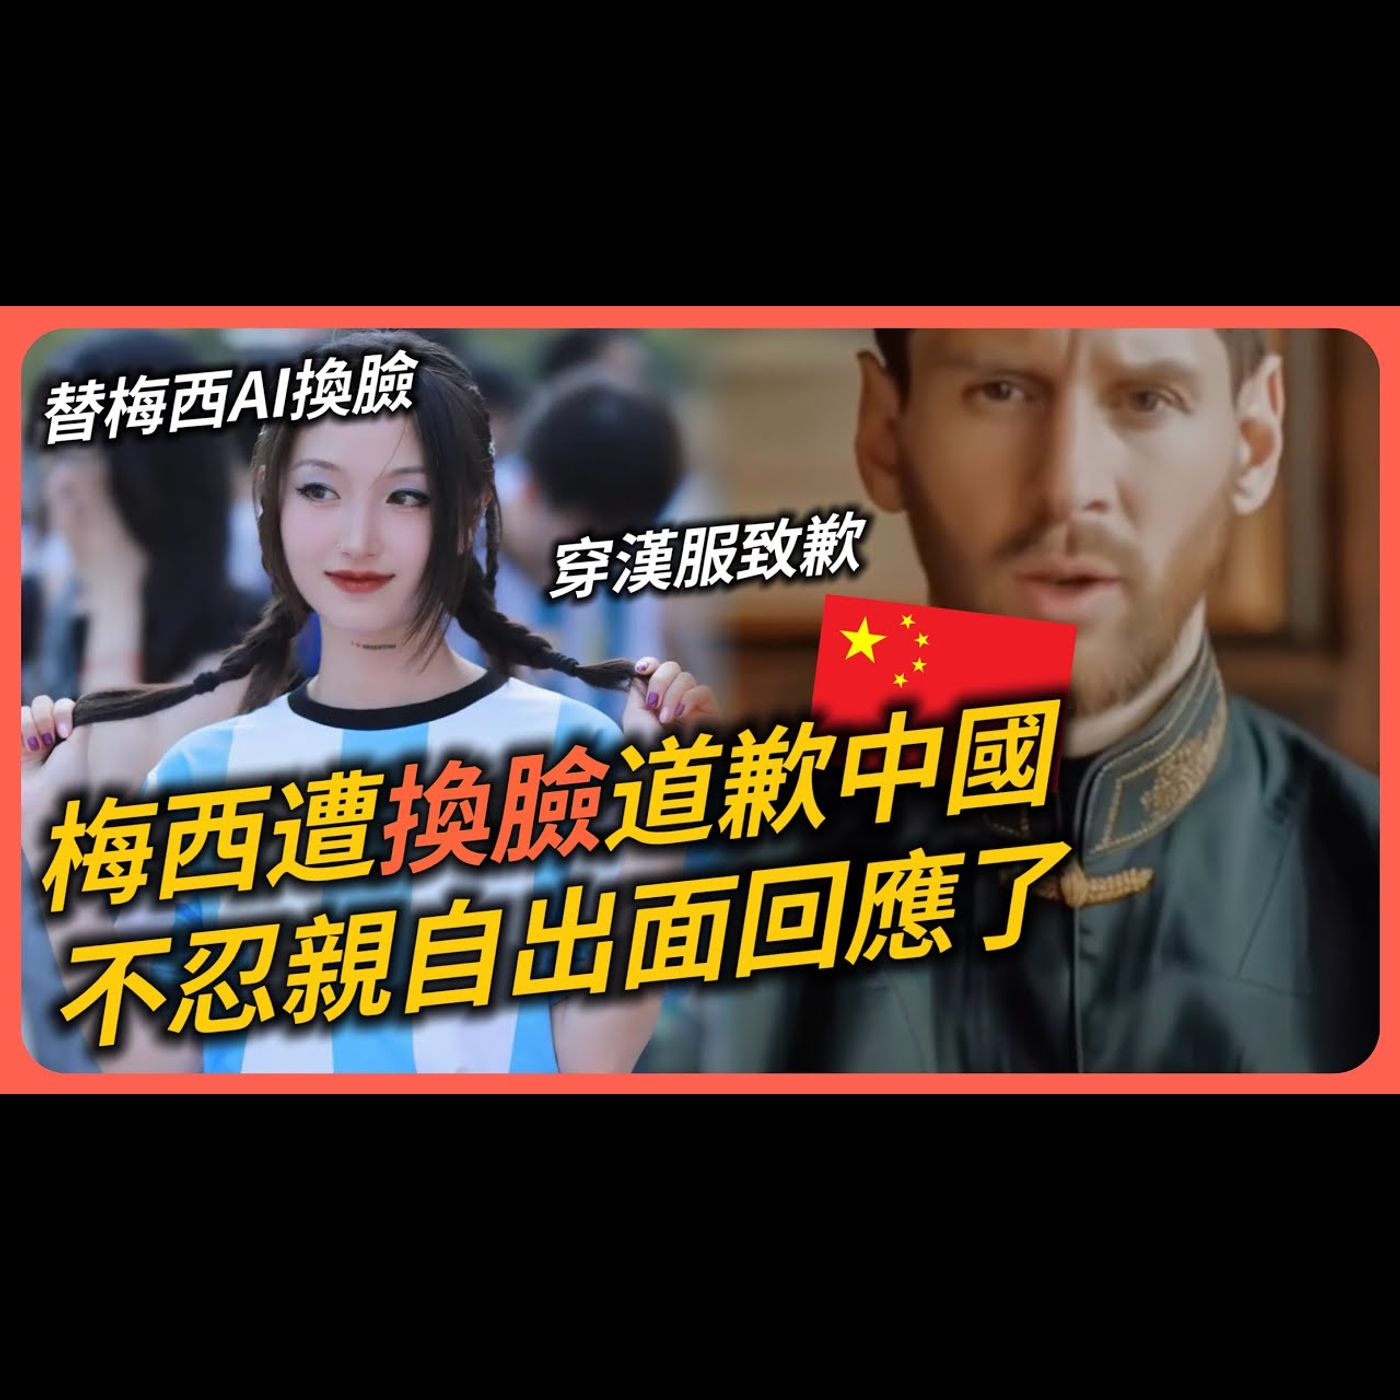 糗大了！中國球迷利用AI合成梅西「道歉影片」網瘋傳！梅西穿上唐裝漢服致歉中國粉絲喊「最愛國家是中國」！甚至還用流利中文表白大陸！最終梅西回應了「XX」！